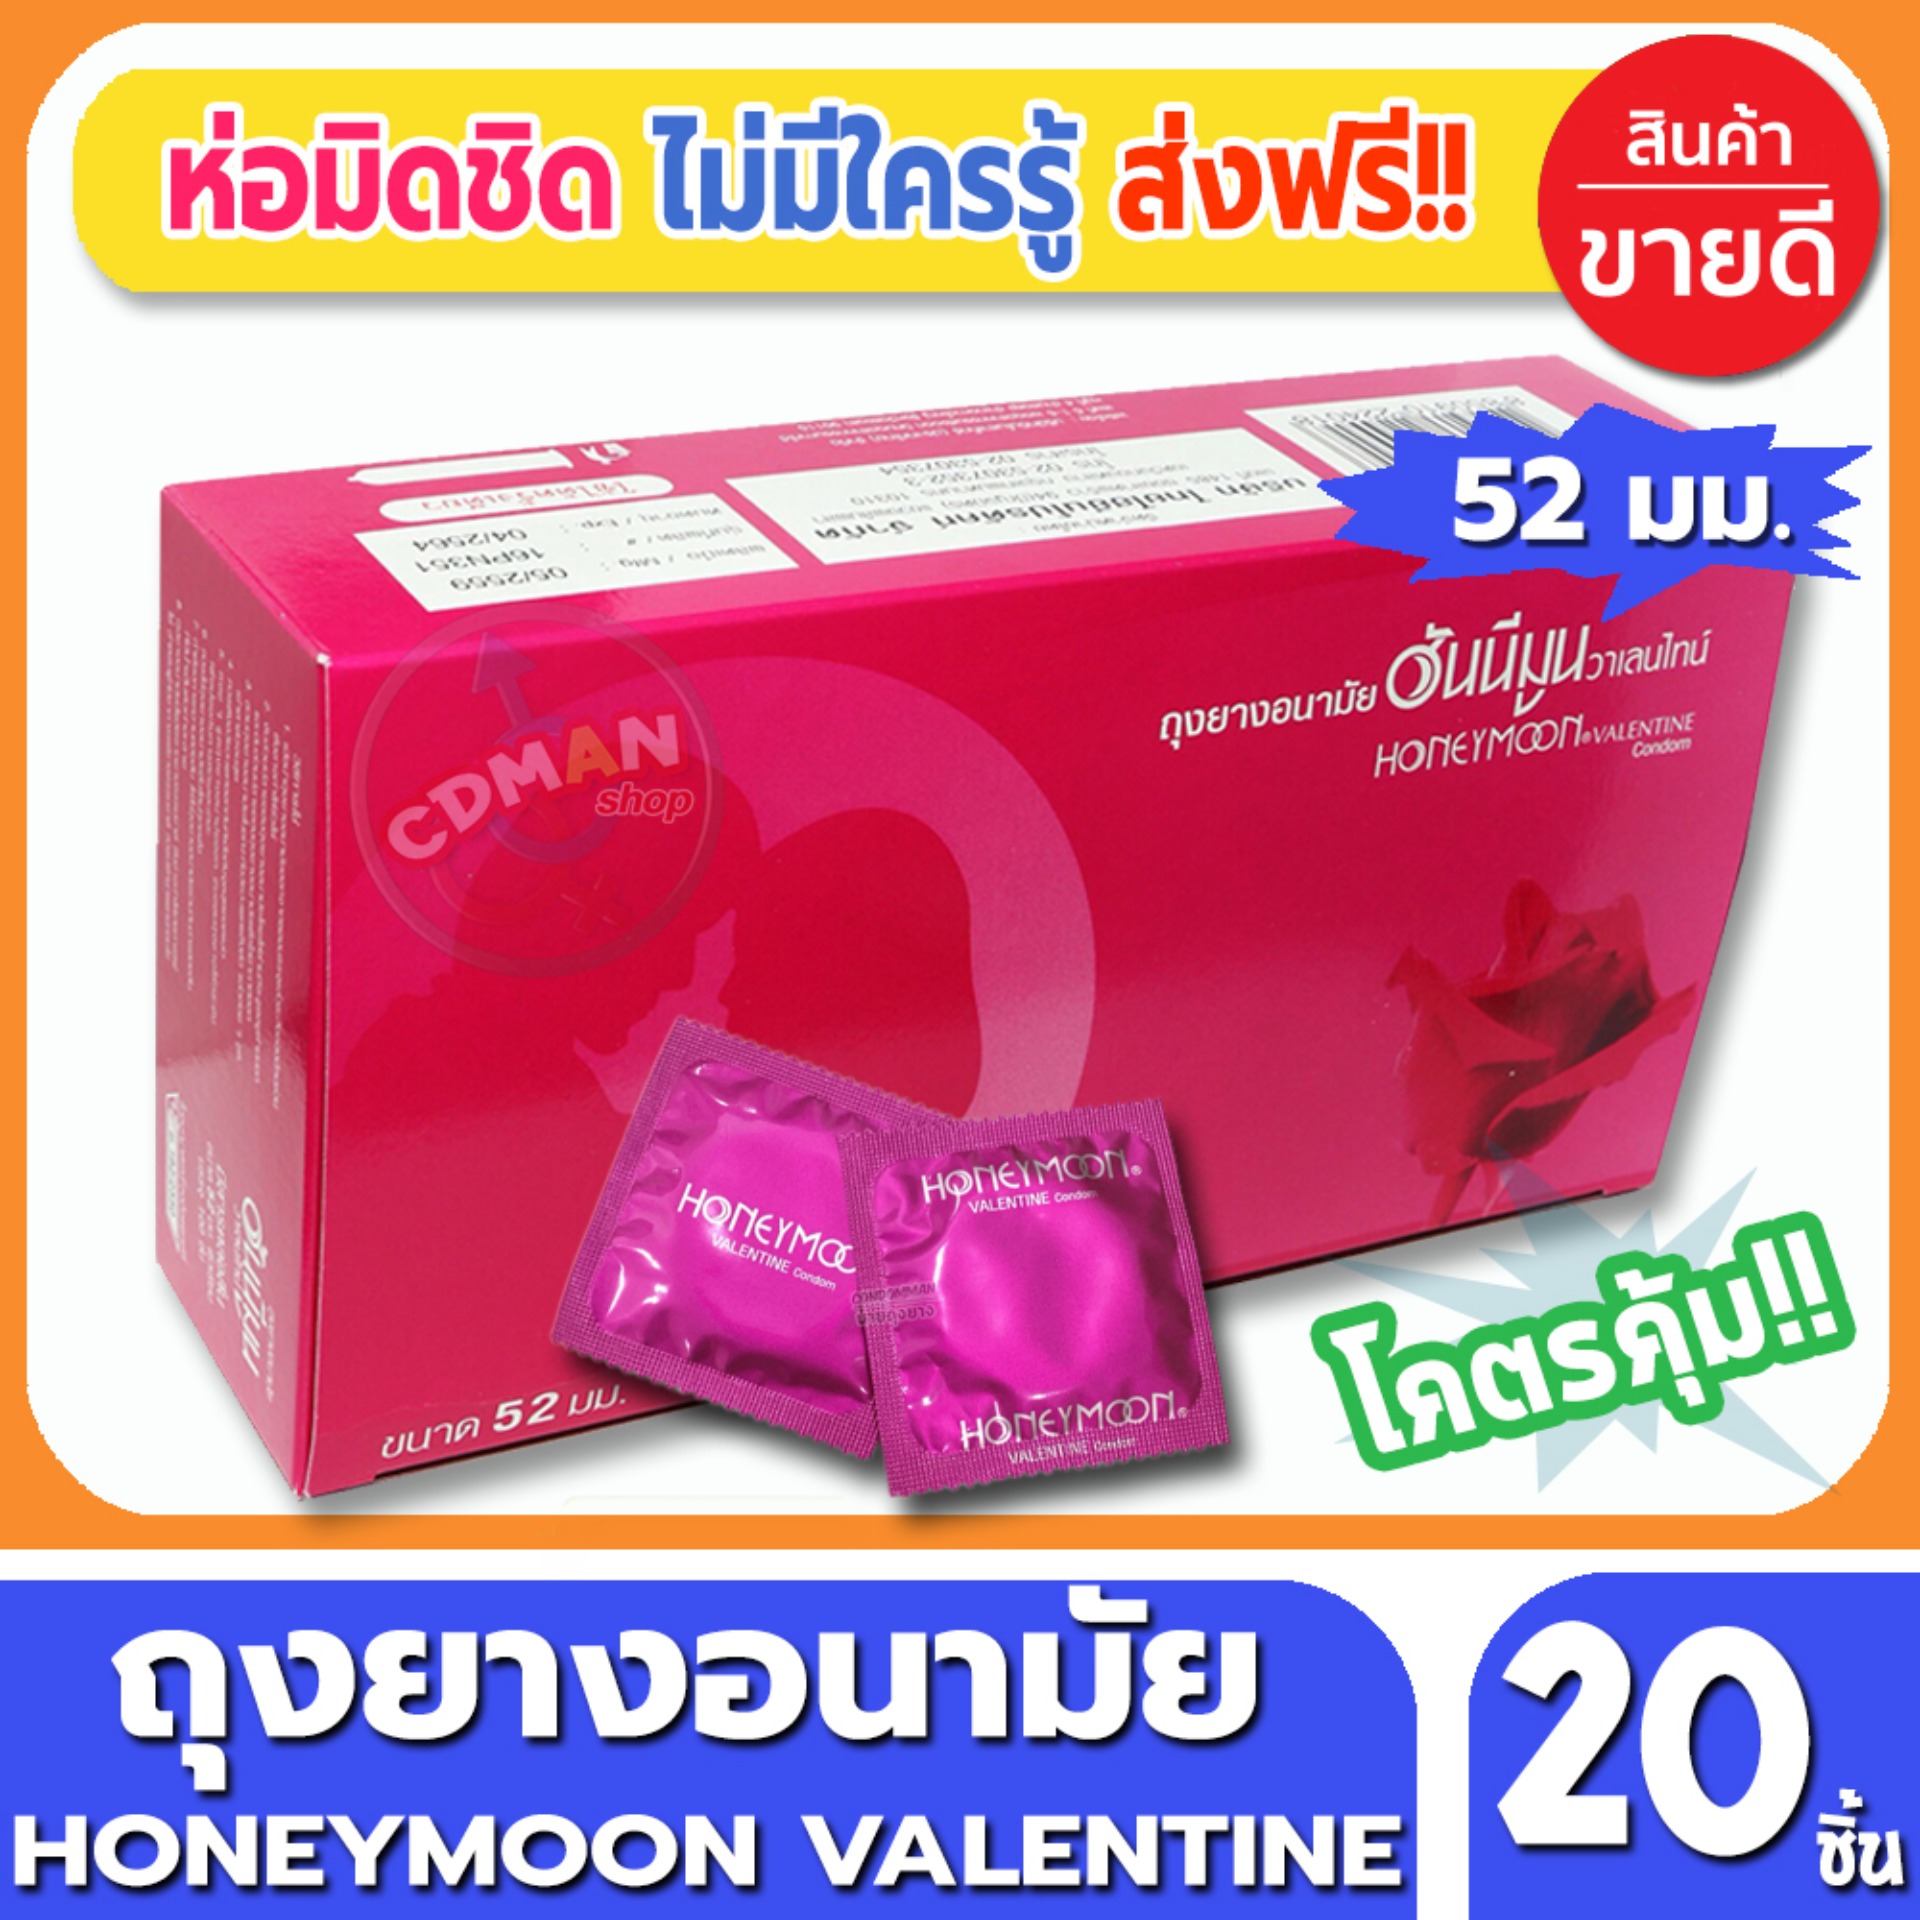 ถุงยางอนามัย Honeymoon Valentine Condom ถุงยาง ฮันนีมูน วาเลนไทน์ ขนาด 52 มม. จำนวน 20 ชิ้น ถุงยางอนามัยคุณภาพดี ราคาเบาๆ สบายกระเป๋า พร้อมรับศึกหนักทั้งวันทั้งคืน